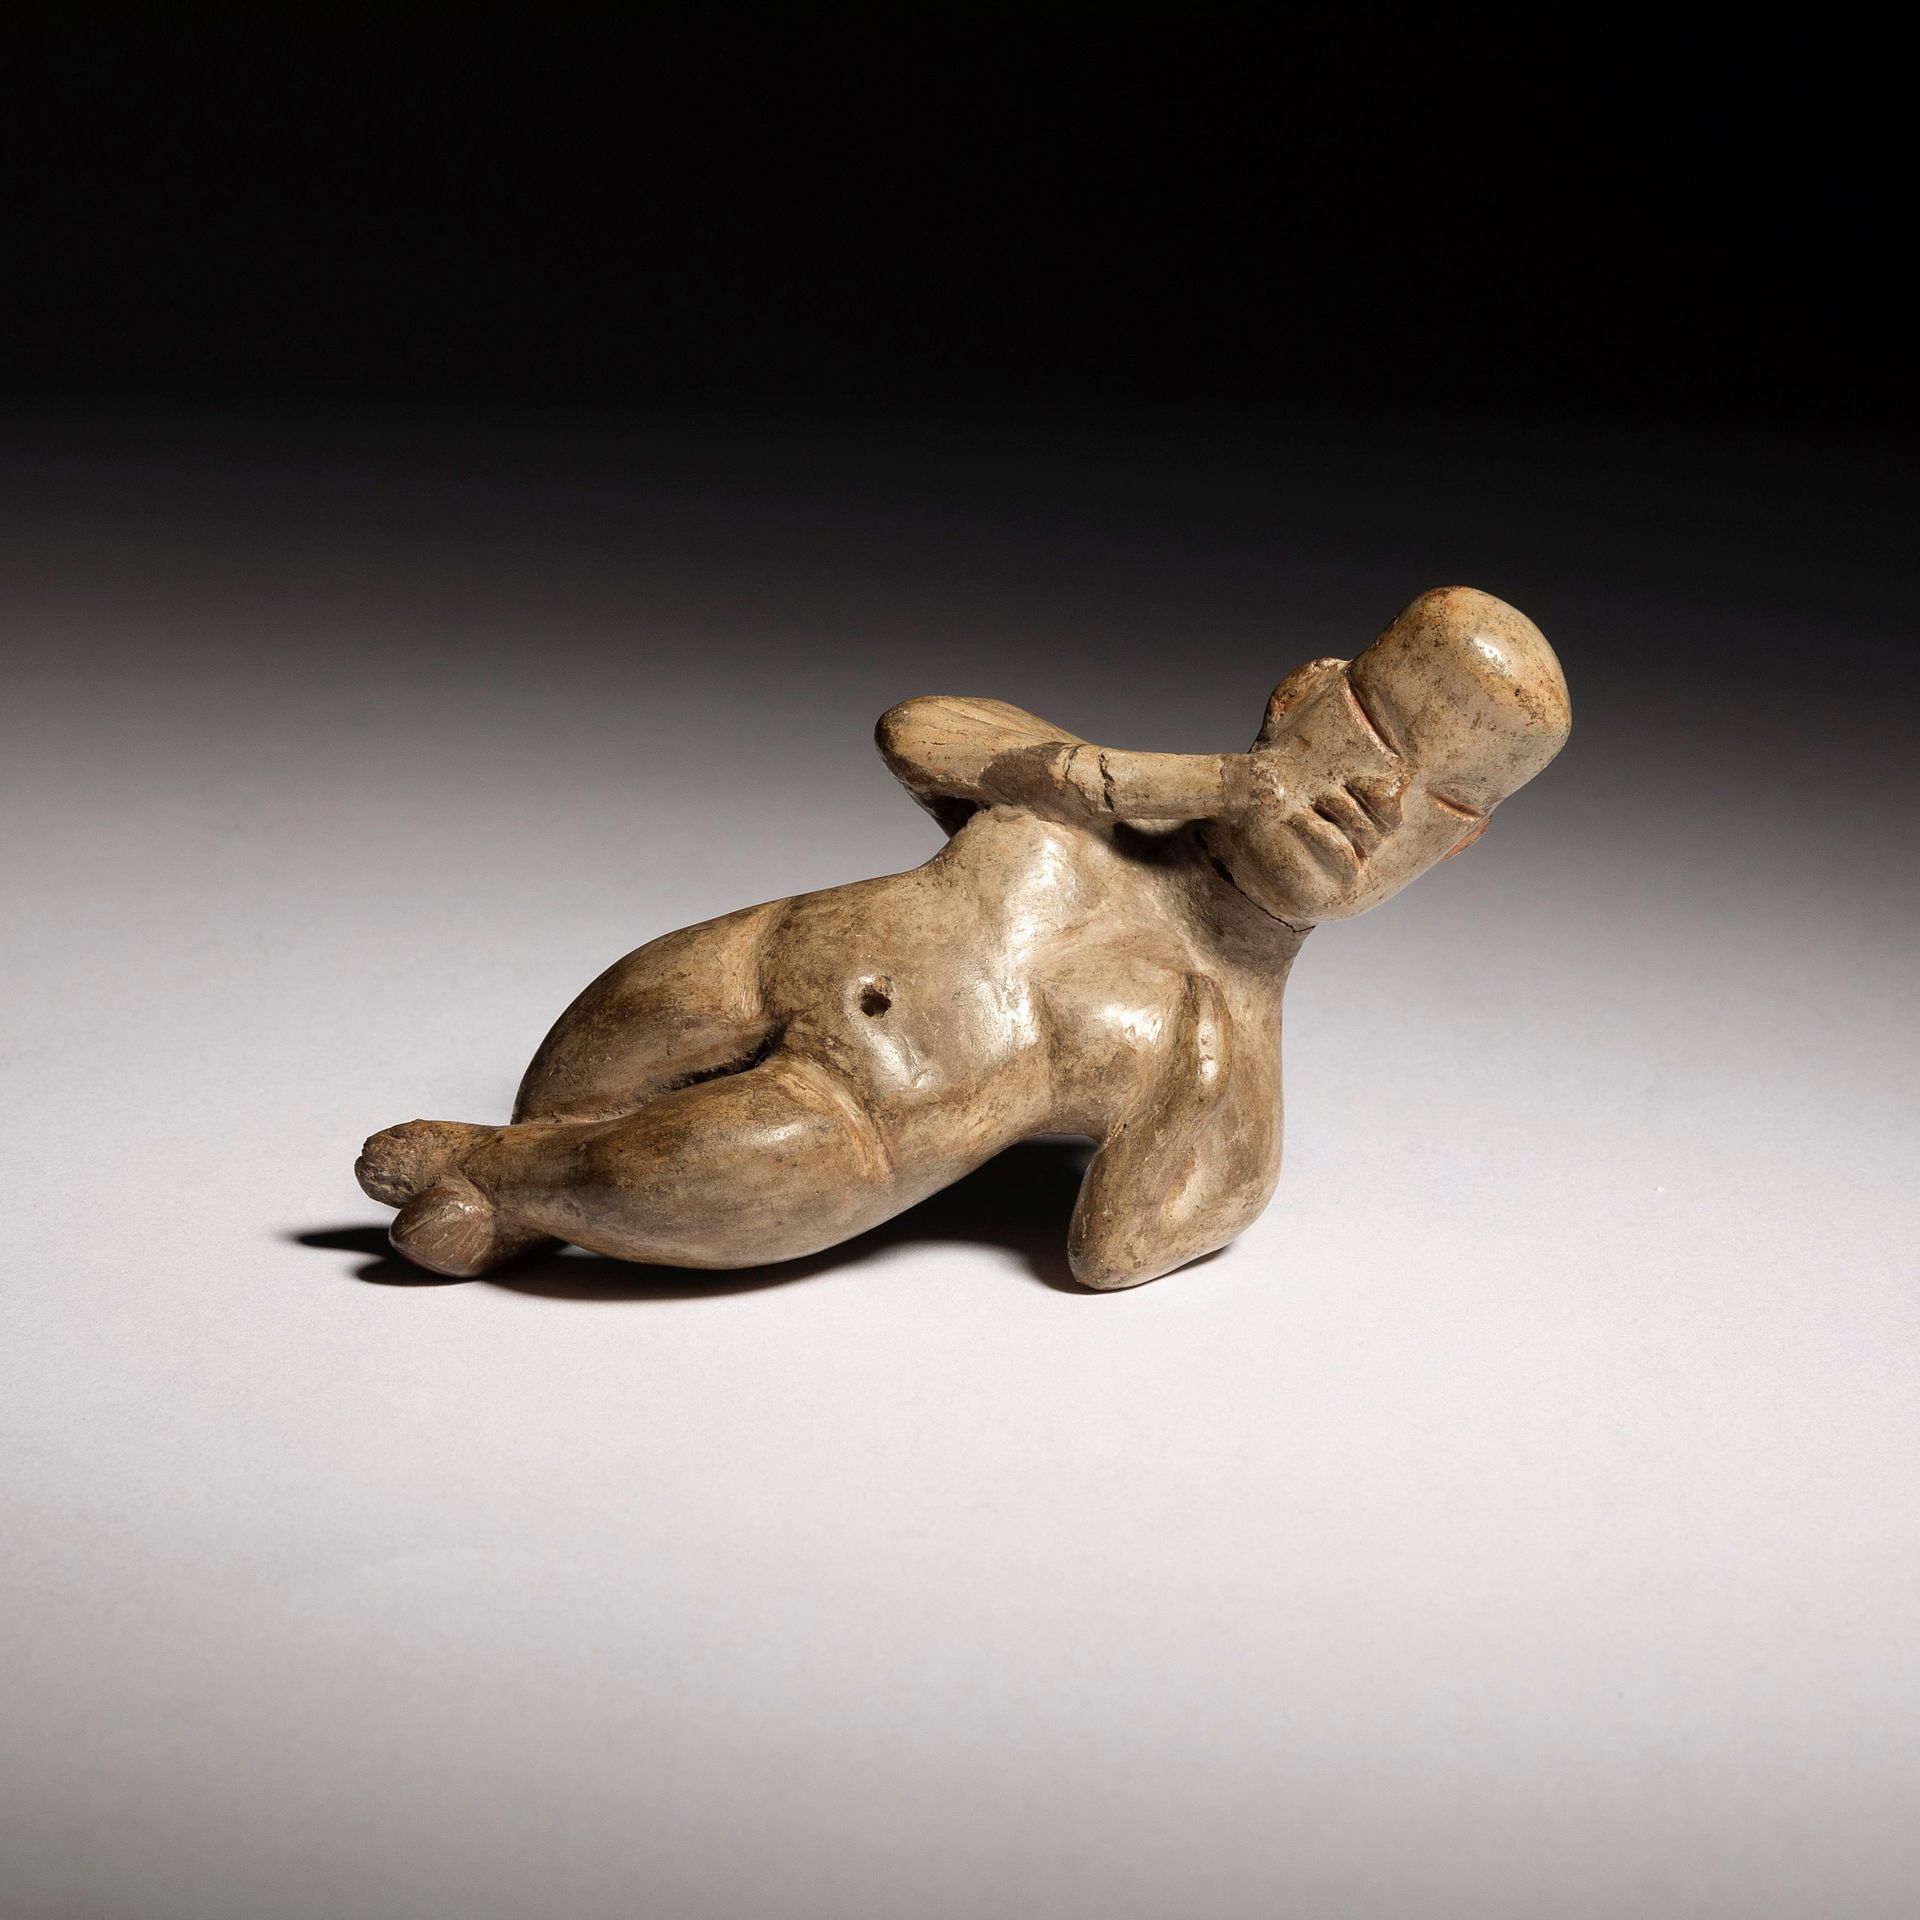 Null 一件美丽而罕见的雕像，表现了一个盘腿而卧的人物。

奥尔梅克文化，公元前900至400年，墨西哥

乳白色赤土，赭石色颜料，颈部和一只手臂上有明显的修&hellip;